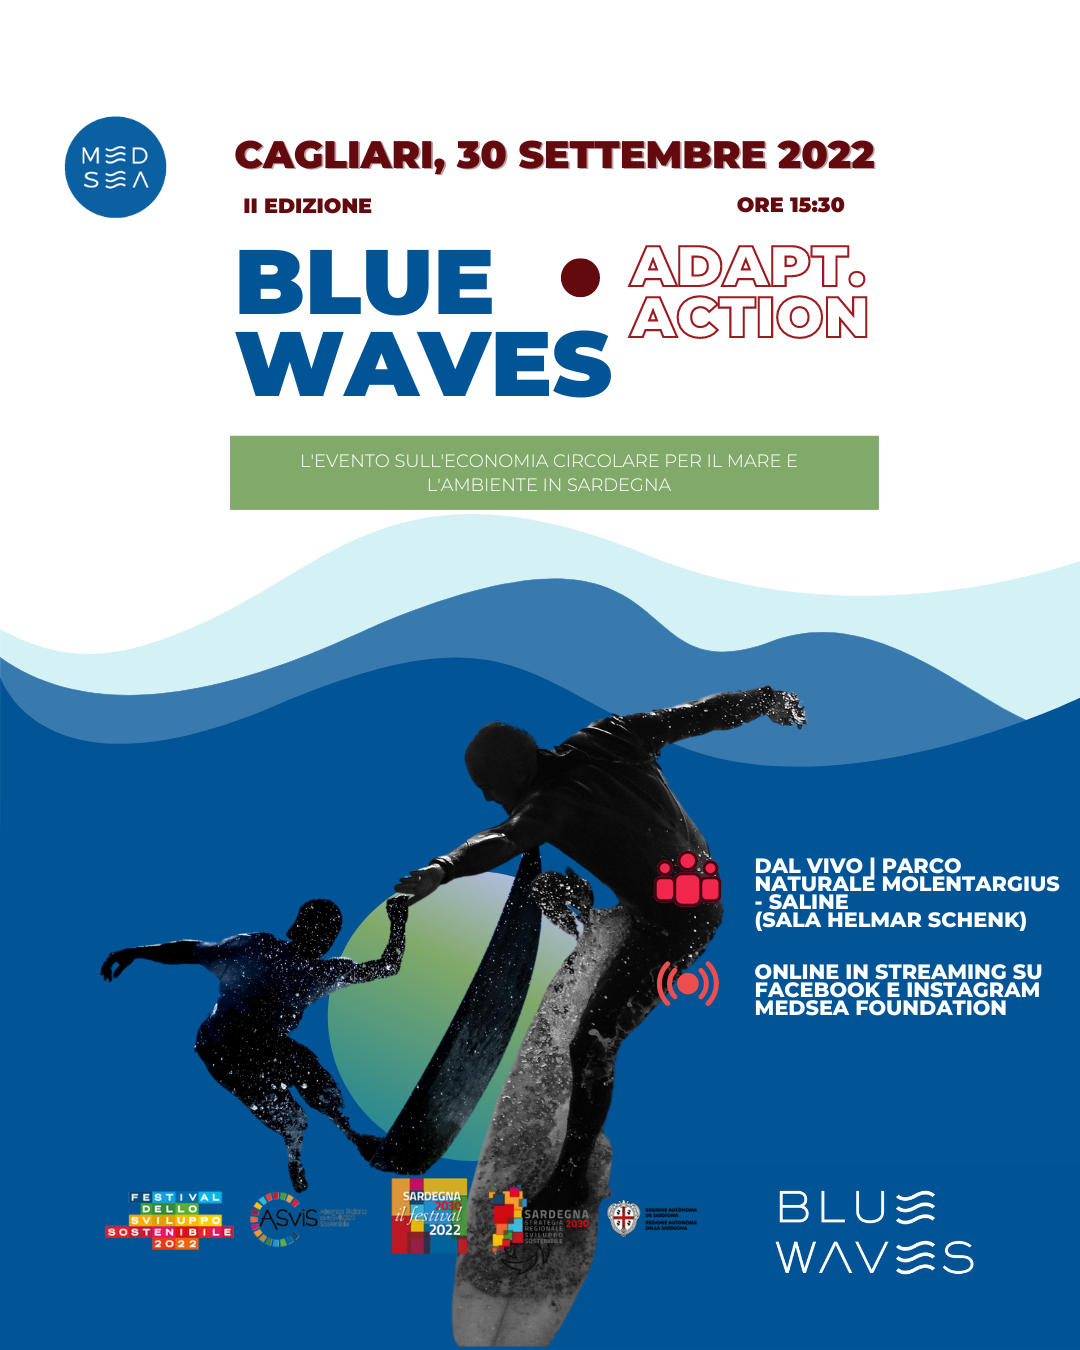 Blue Waves, l'edizione ADAPT.Action è dedicata ai cambiamenti climatici: il 30 Settembre a Cagliari